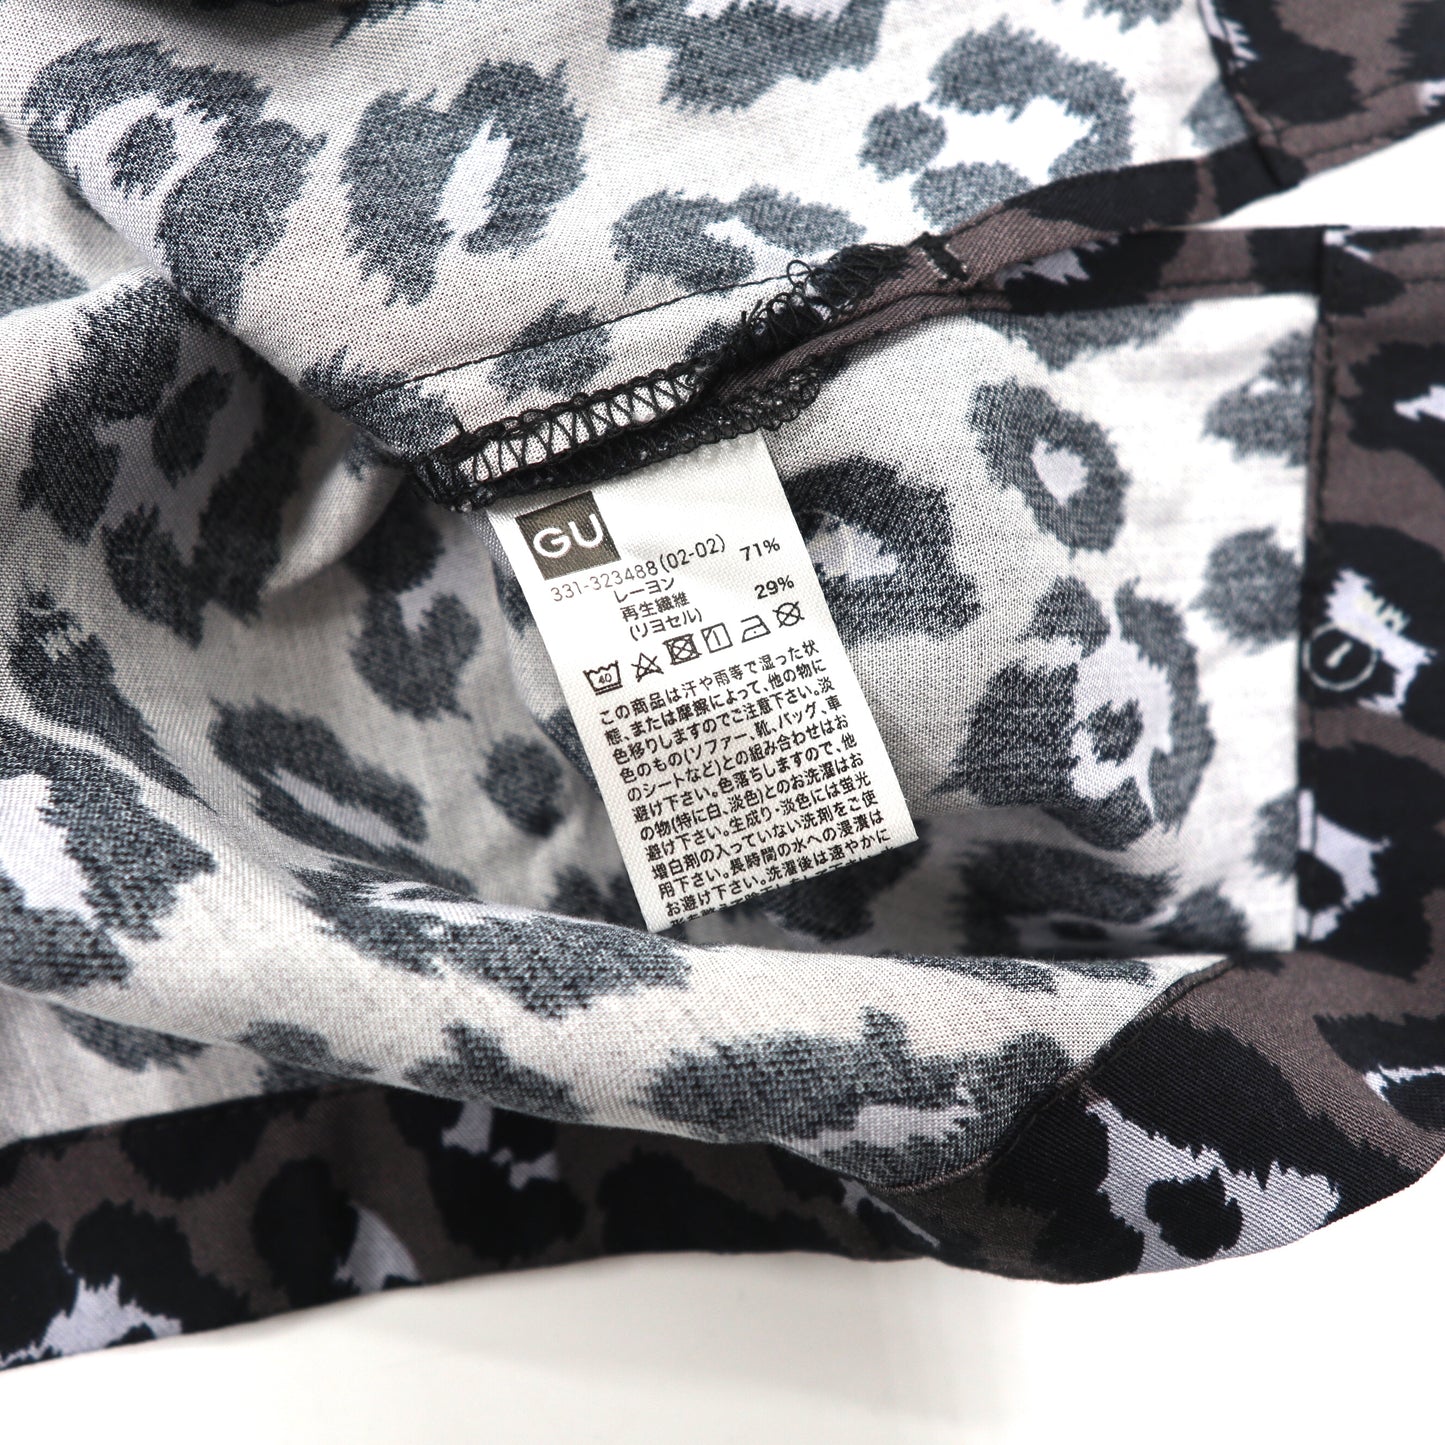 1MW by SOPH. オープンカラーシャツ XL ブラック レーヨン クレイジーパターン 未使用品